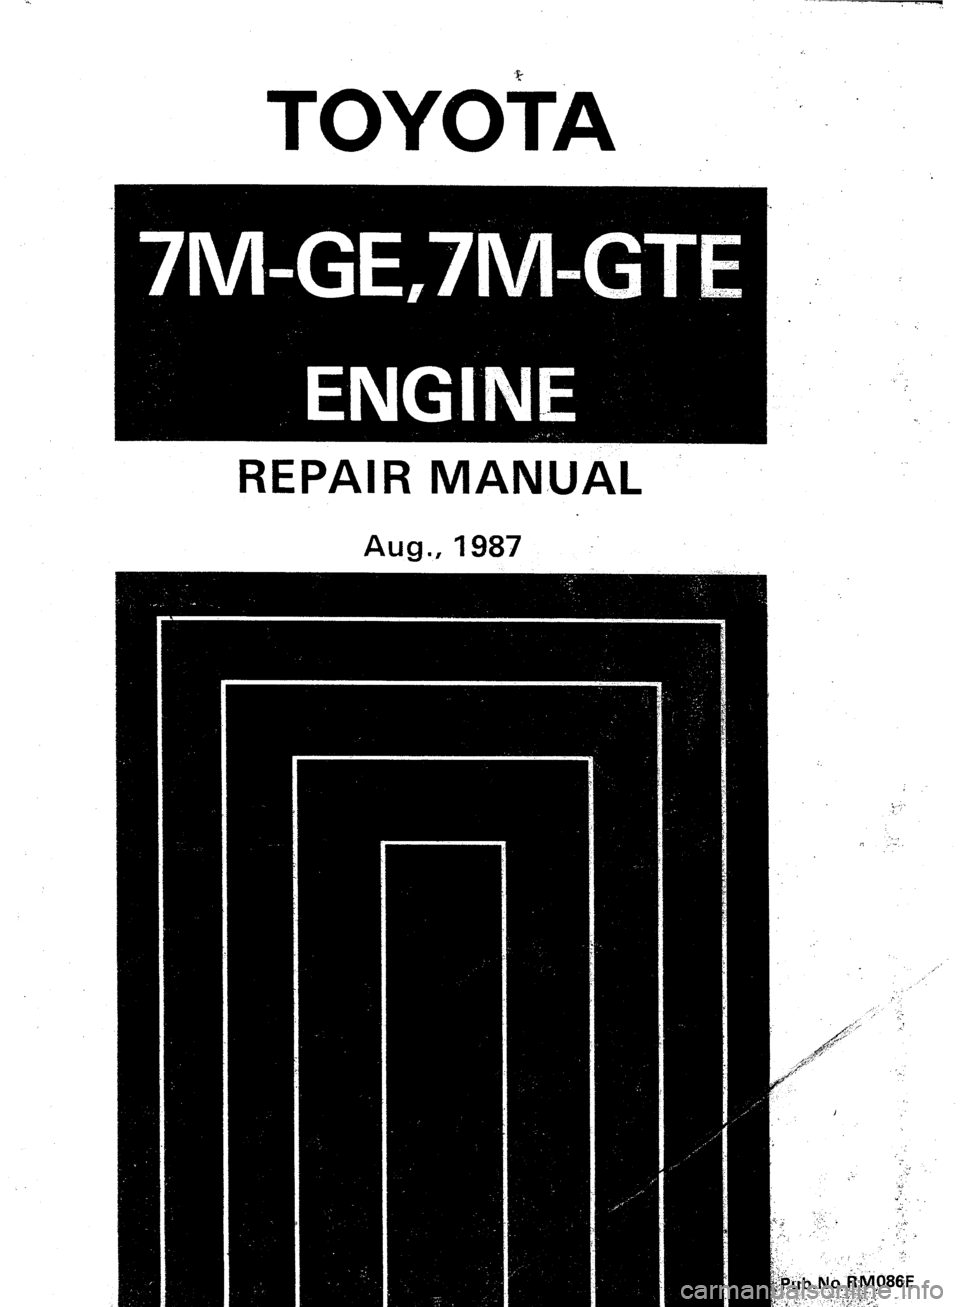 TOYOTA CELICA 1987  Service Repair Manual TOYOb4 ‘. 
REPAIR MANUAL  